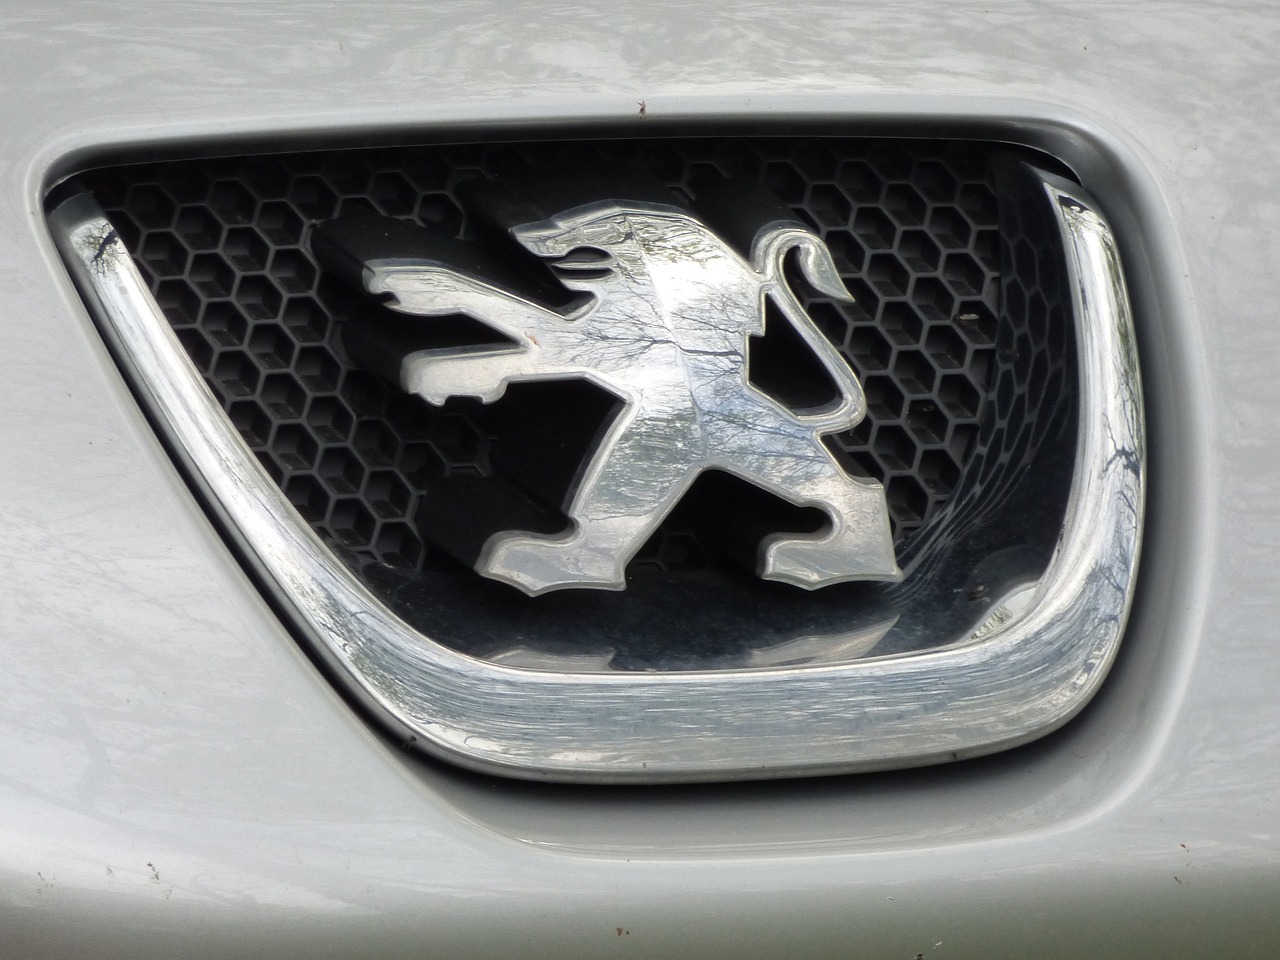 L'Evoluzione della Peugeot: Dalle Origini ai Modelli Moderni